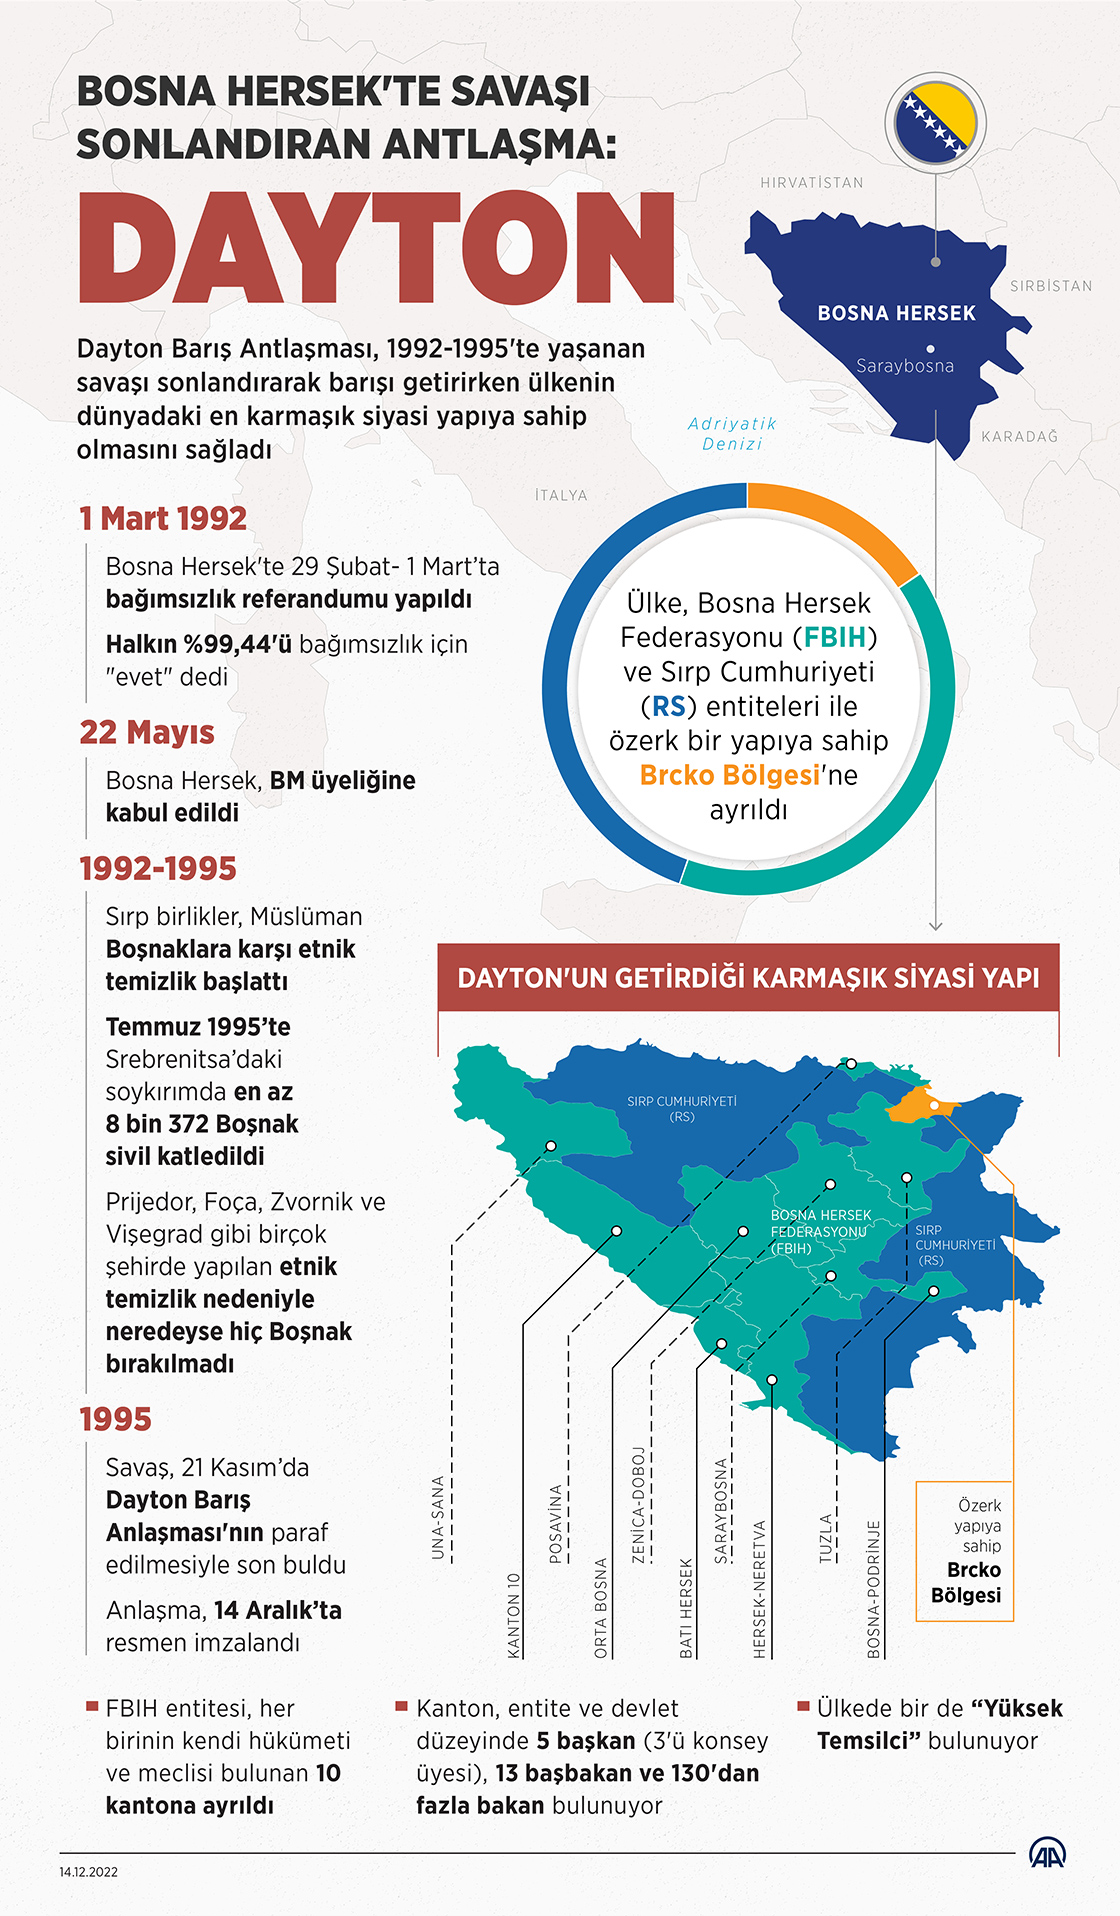 Bosna Hersek'te savaşı sonlandıran antlaşma: Dayton